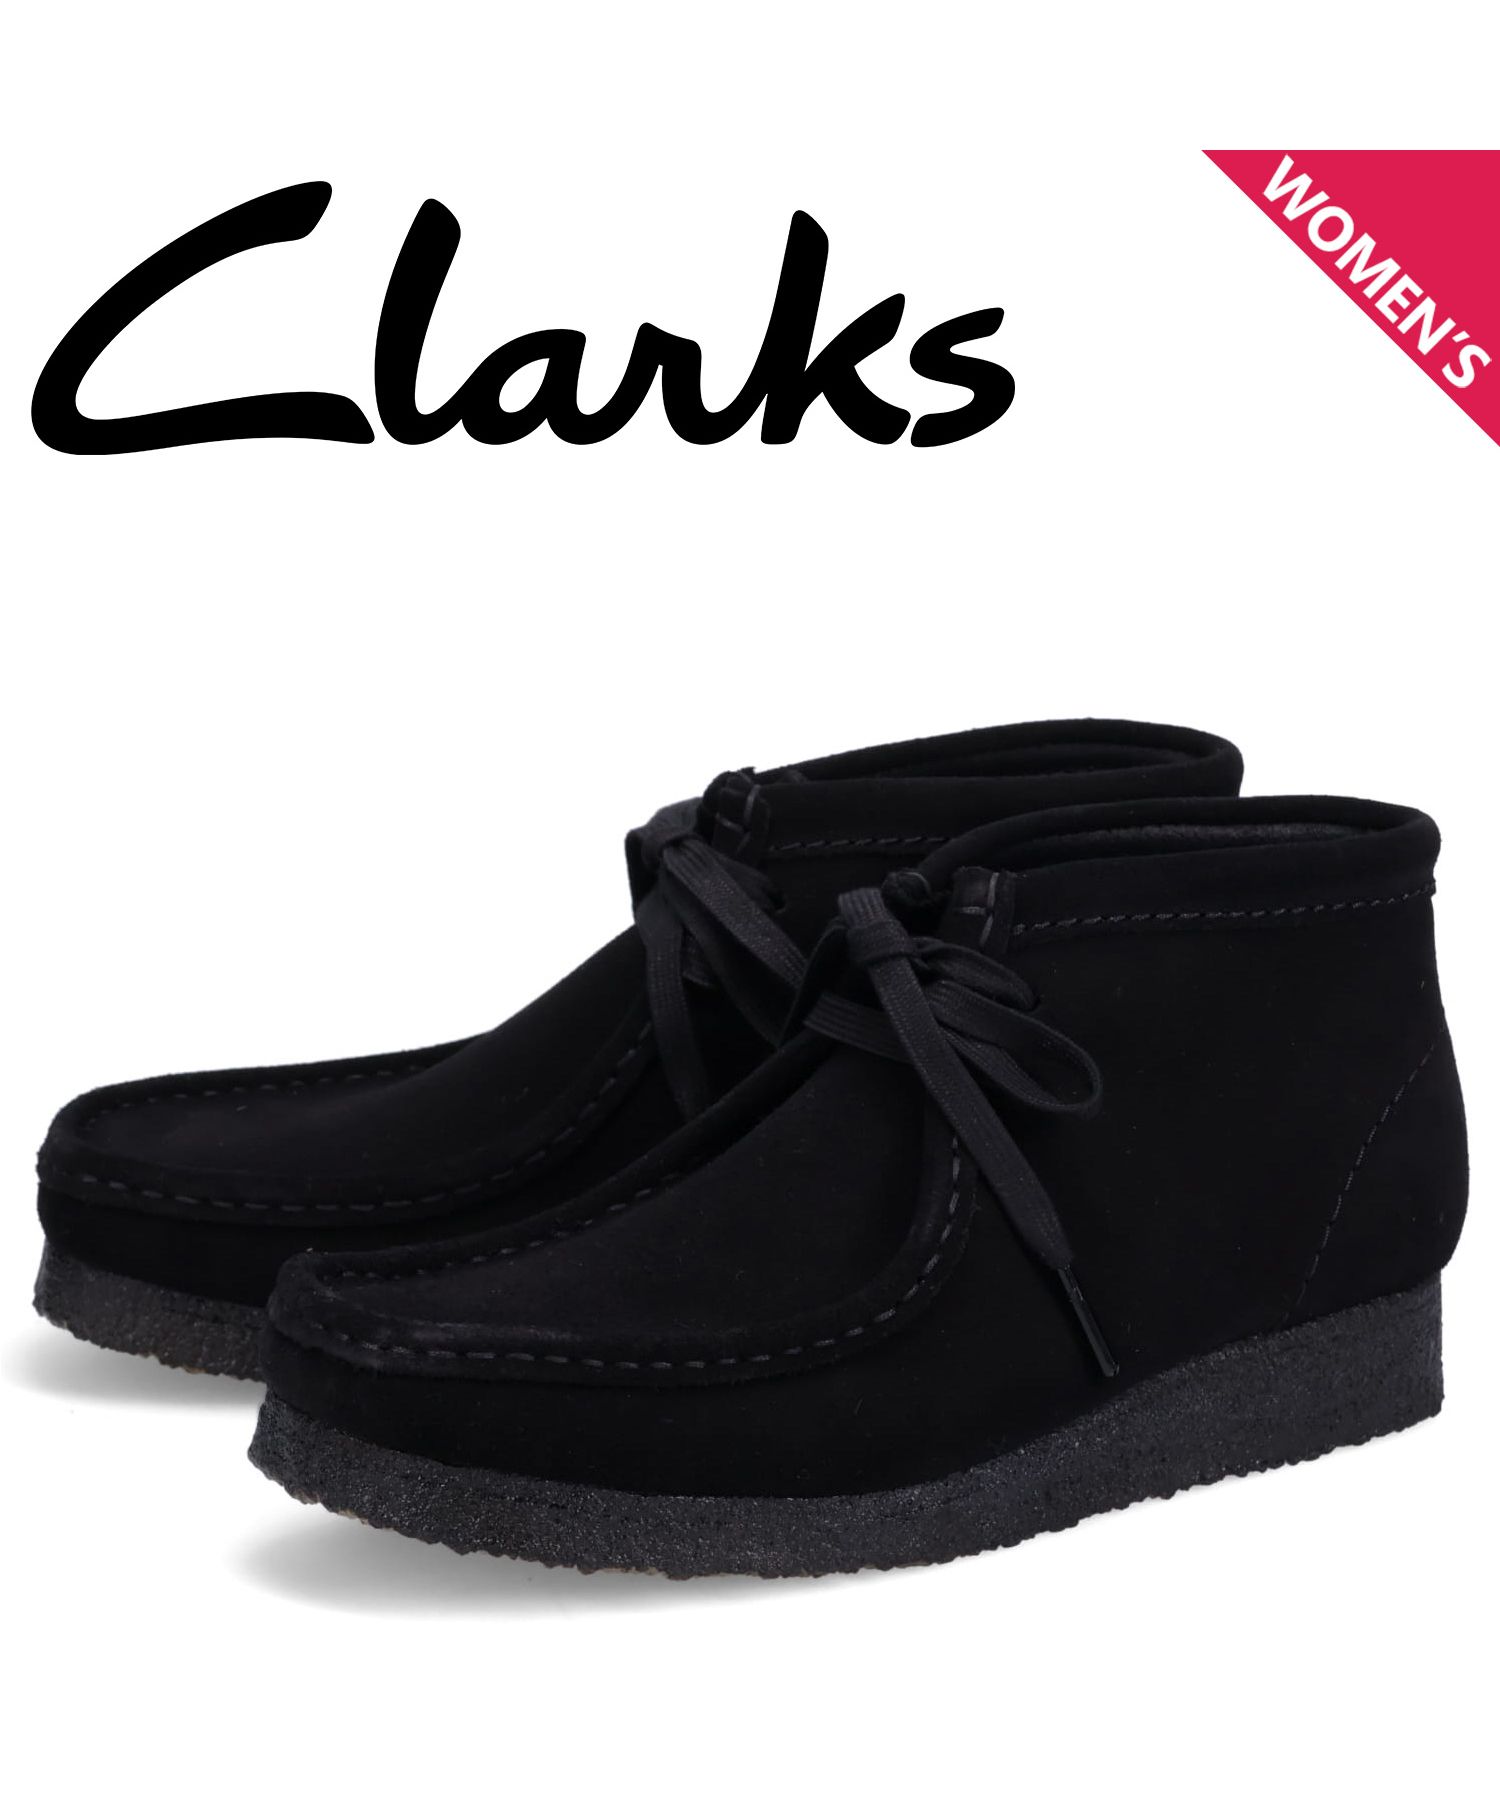 クラークス オリジナルズ Clarks Originals ブーツ ワラビーブーツ